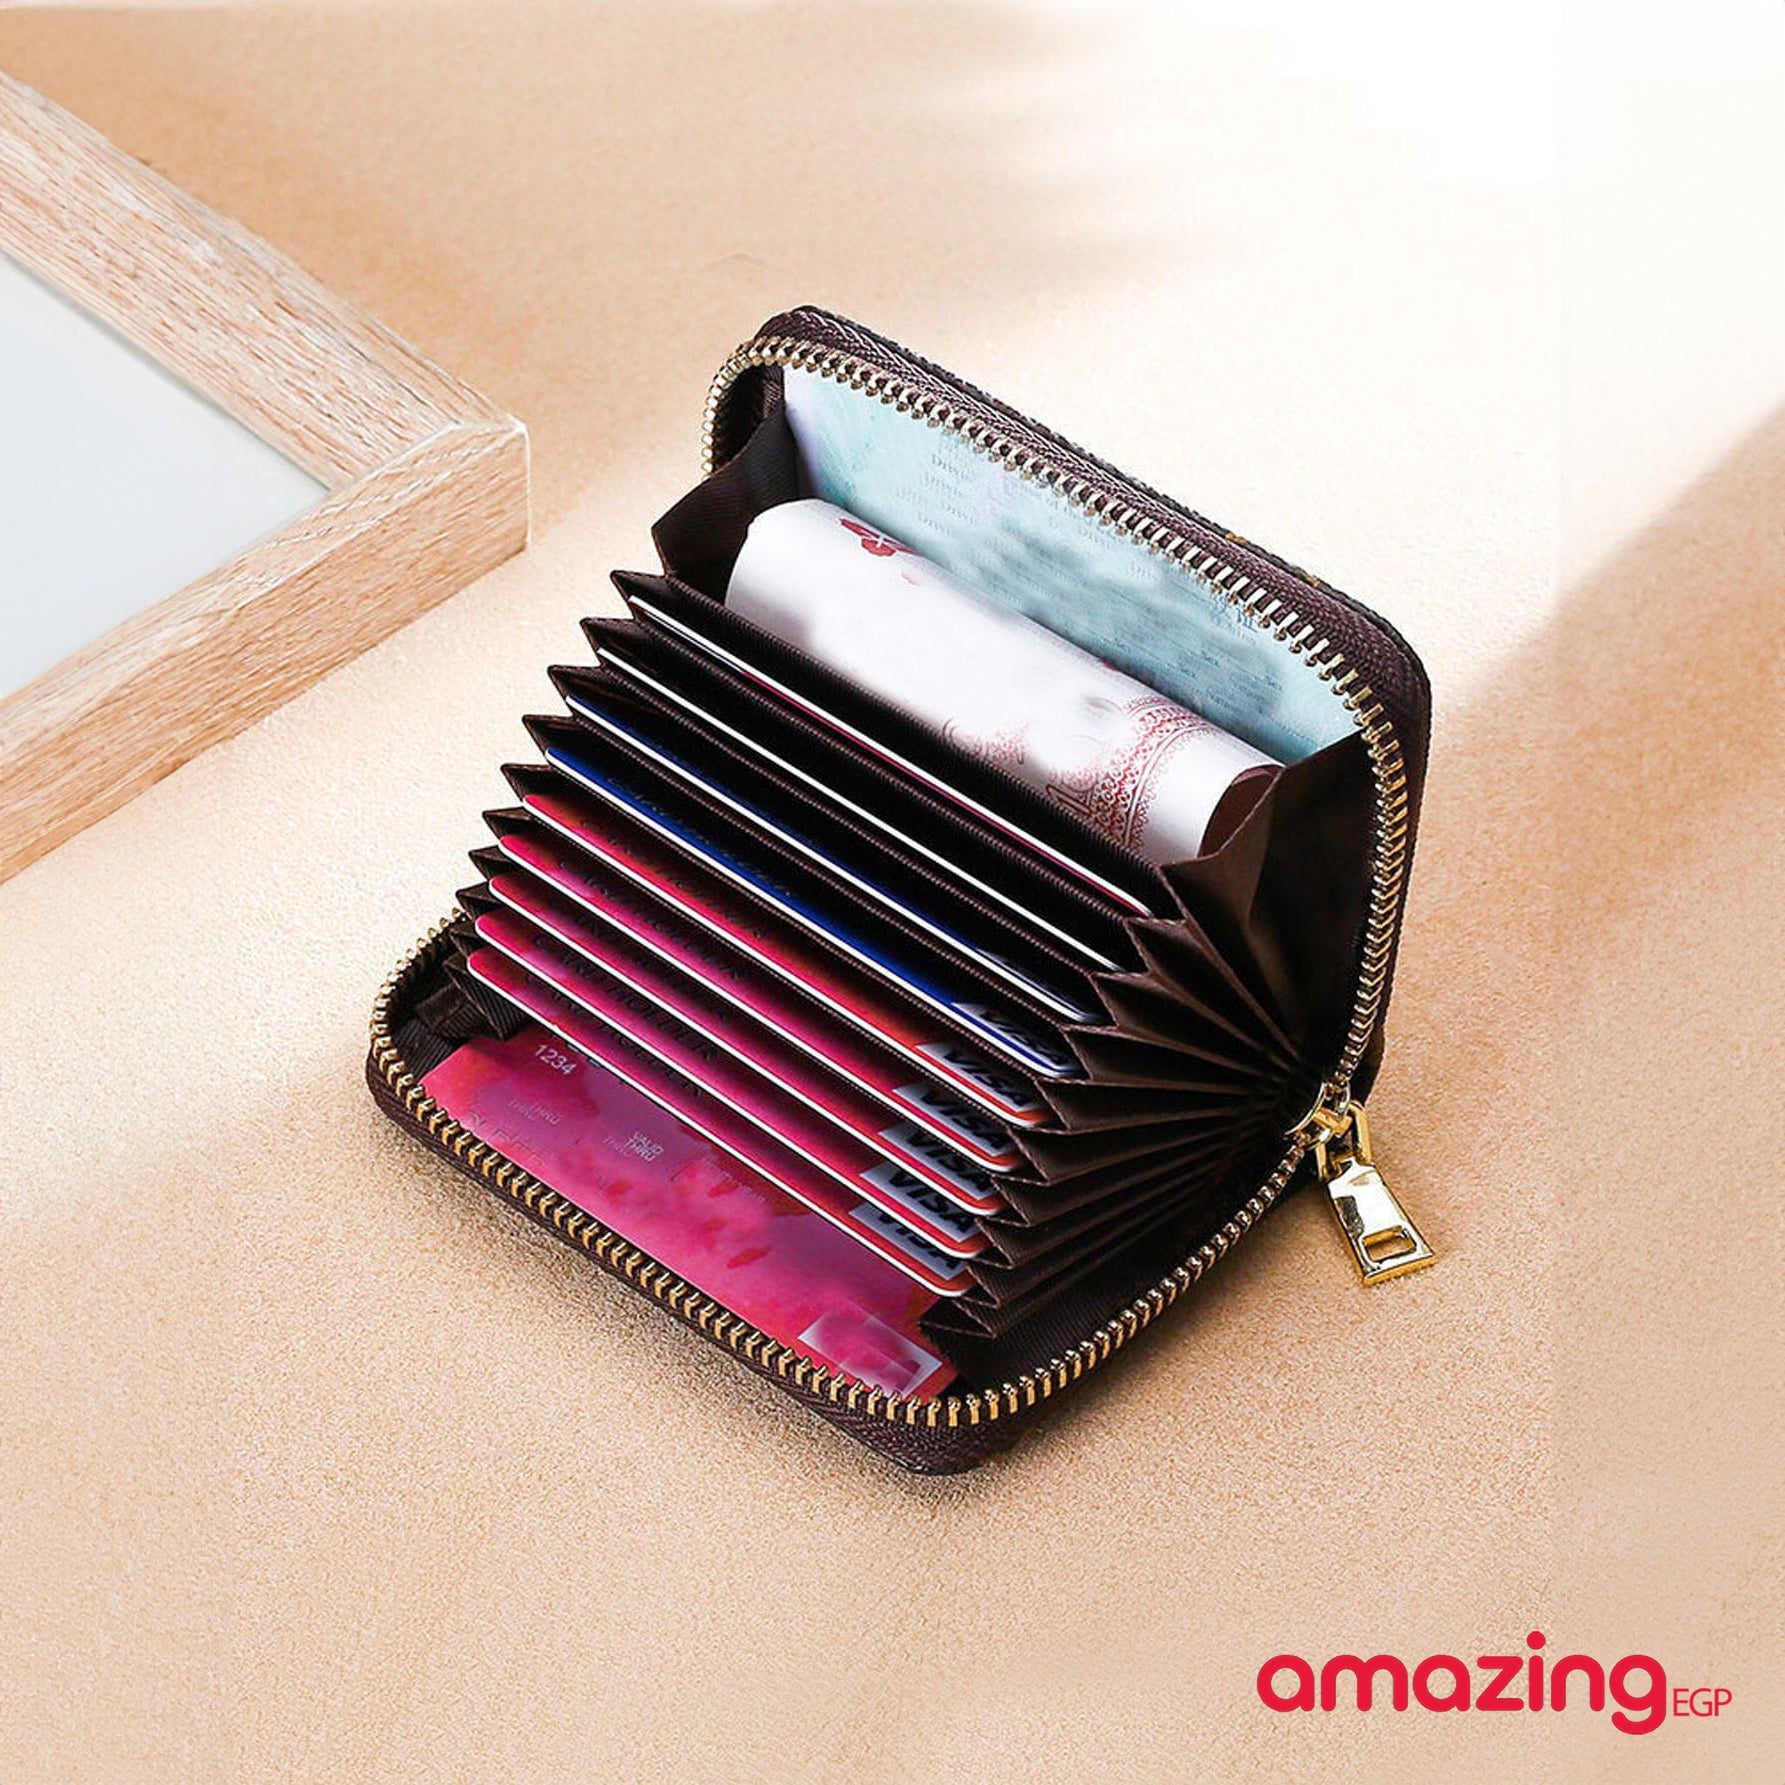 محفظة جلدية لحمل البطاقات والعملات المعدنية ، حقيبة بني مربعات ملونة سستة الأكورديون للنساء والفتيات - بني